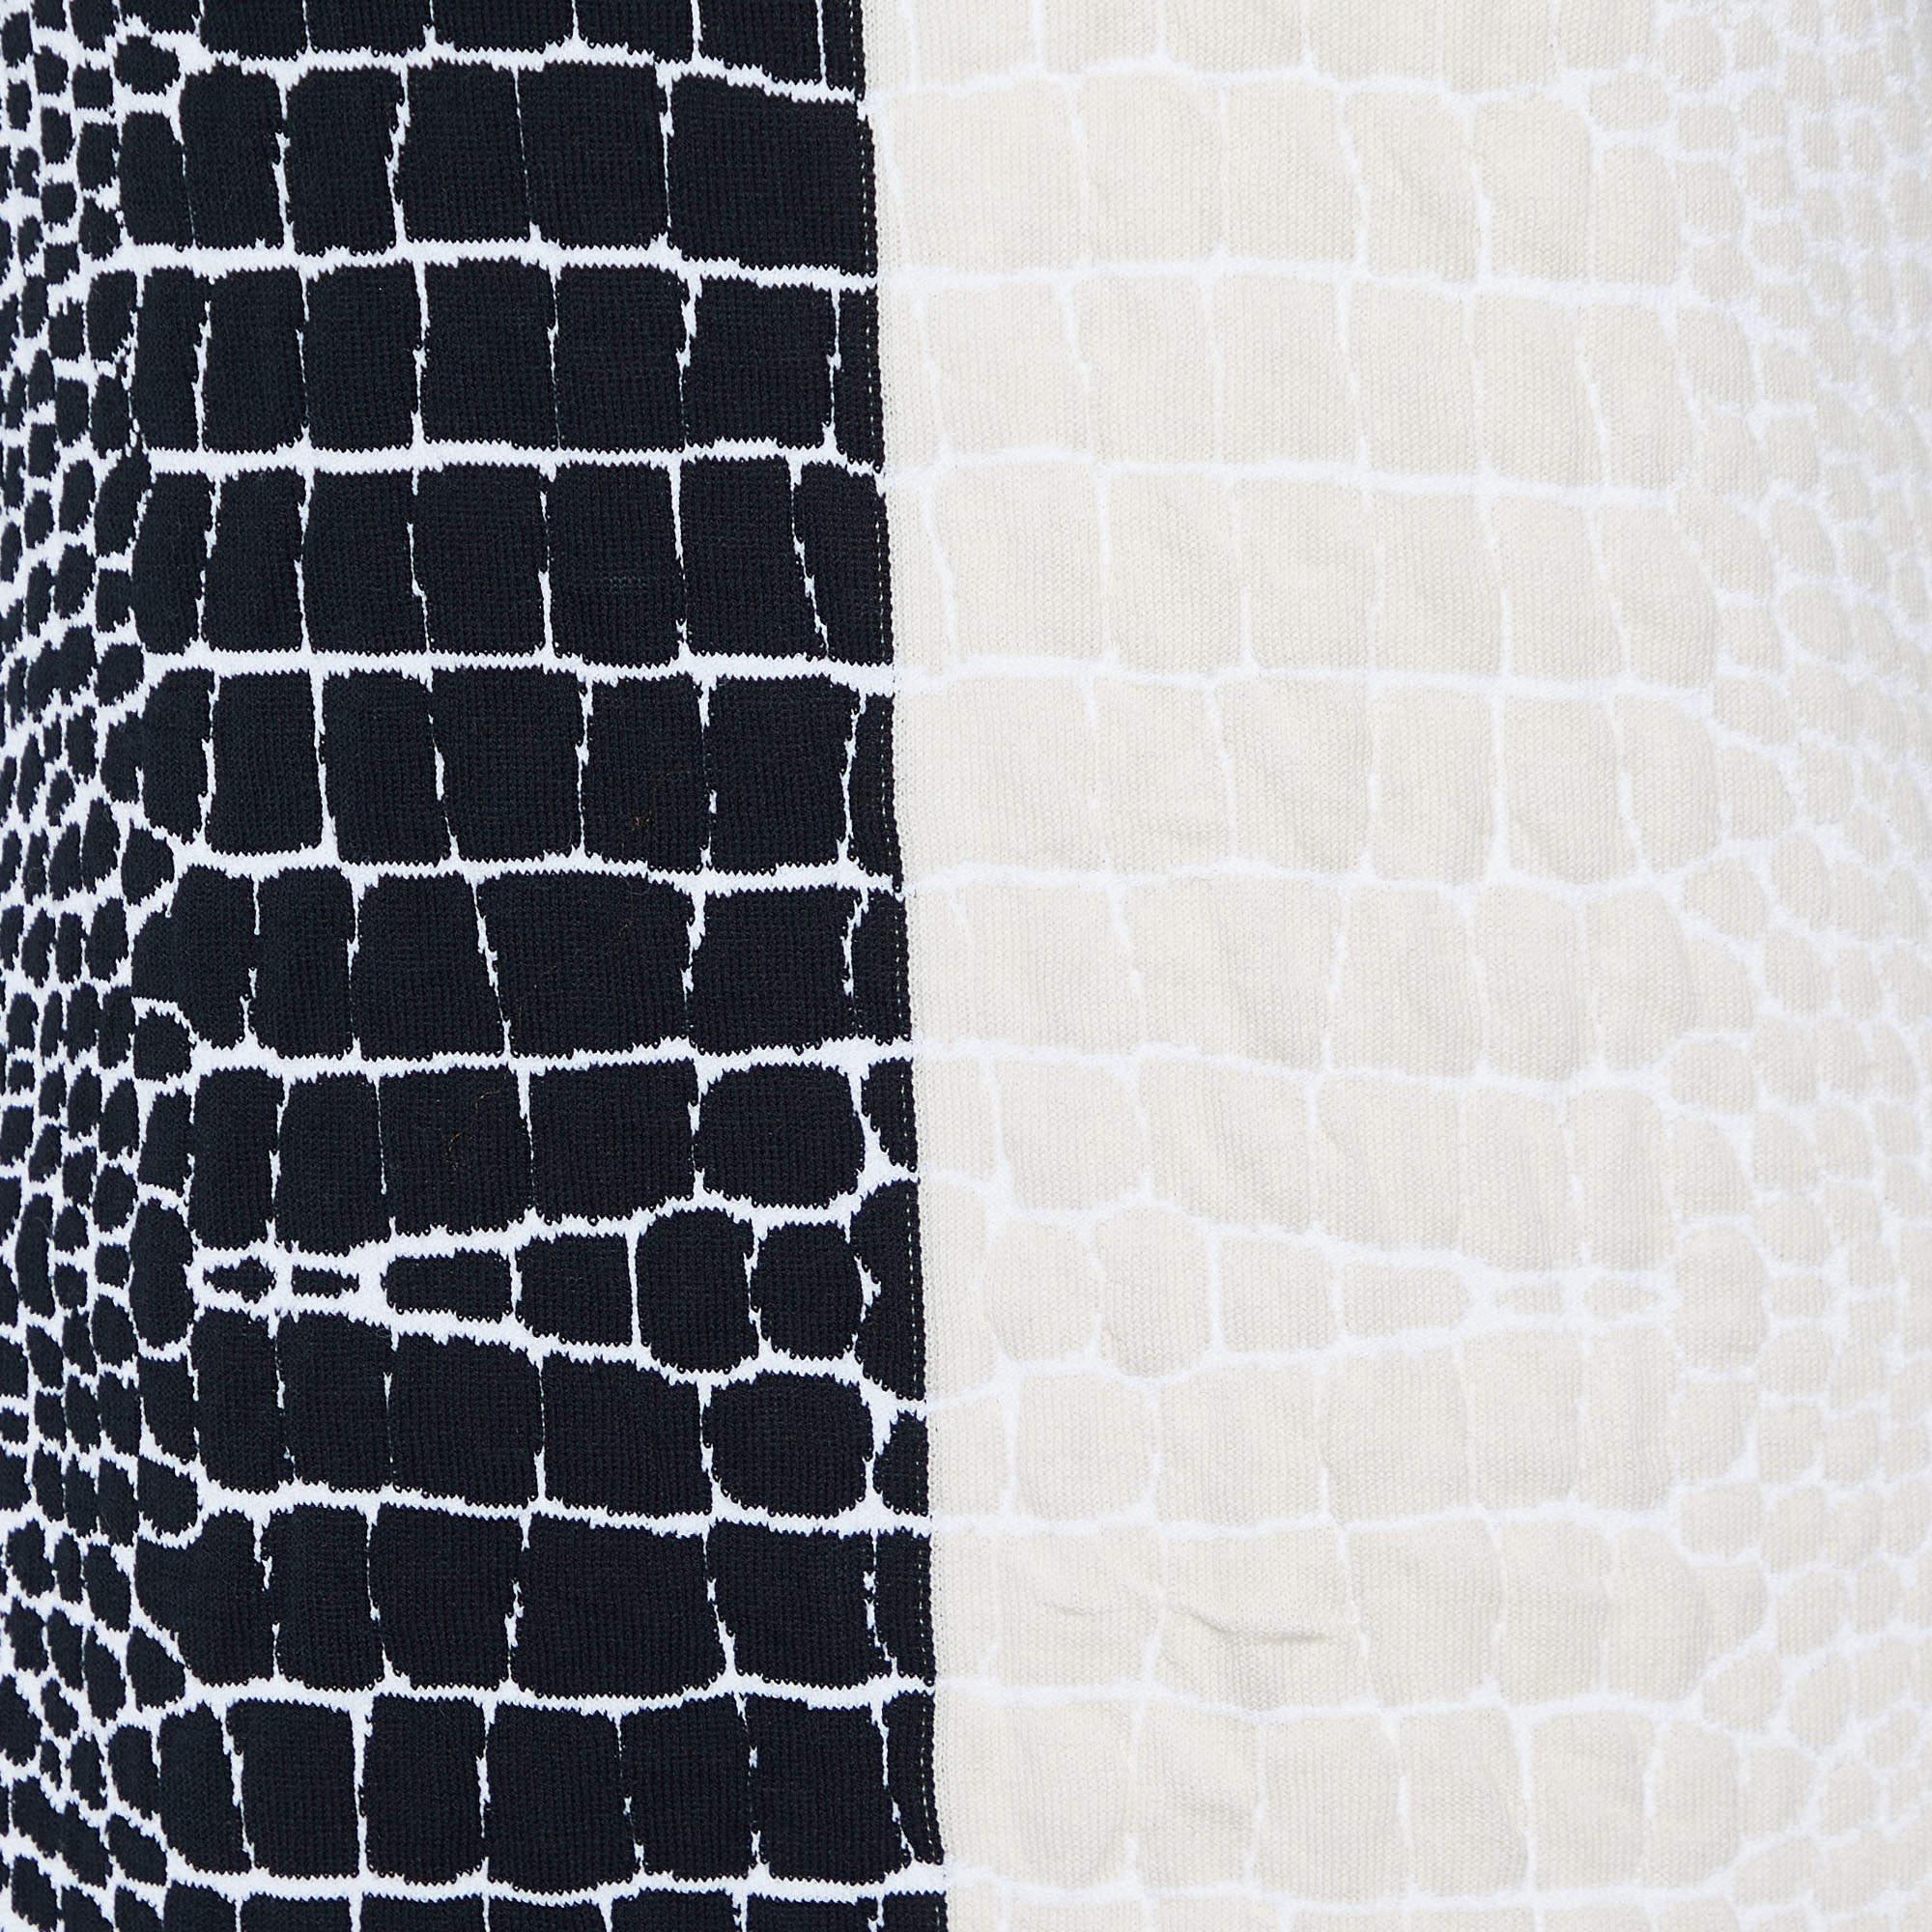 Fendi White/Black Crocodile Jacquard Knit Sleeveless Dress M In Good Condition For Sale In Dubai, Al Qouz 2